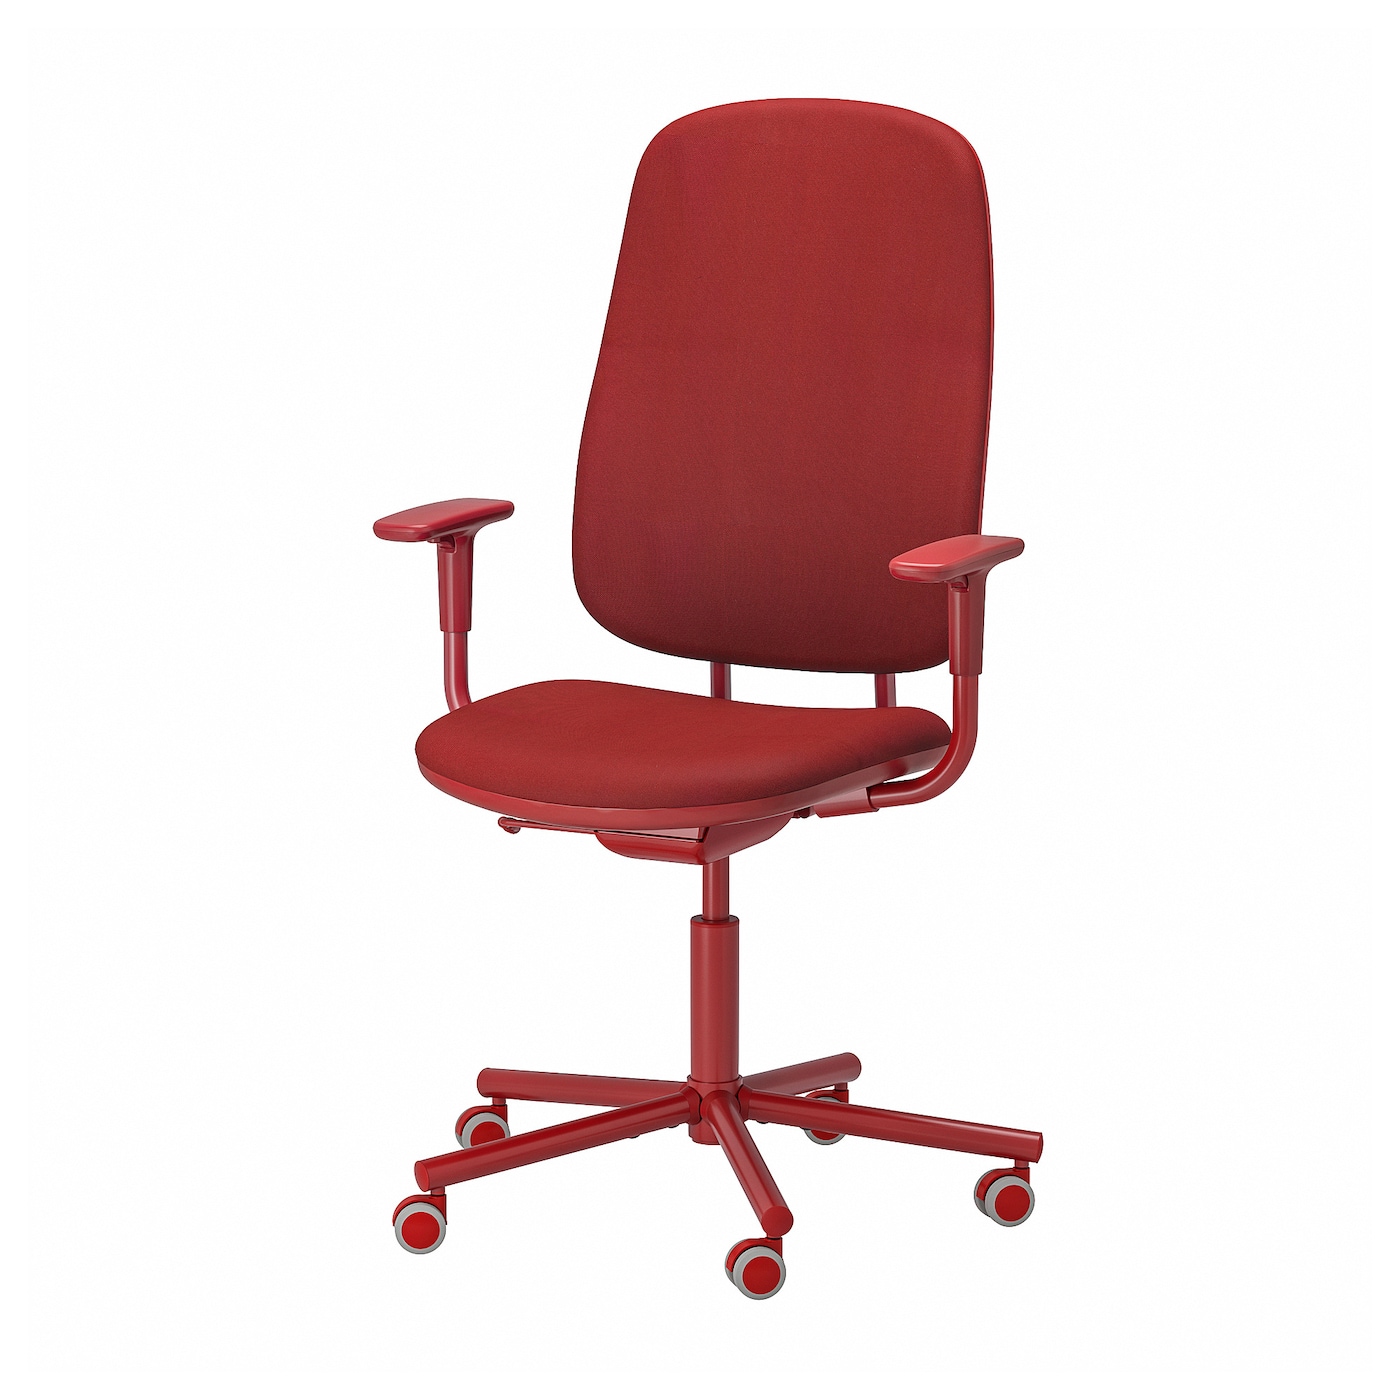 Офисный стул с подлокотниками - IKEA SMÖRKULL/SMORKULL/СМЁРКУЛЛ ИКЕА, 104х66х59 см, красный